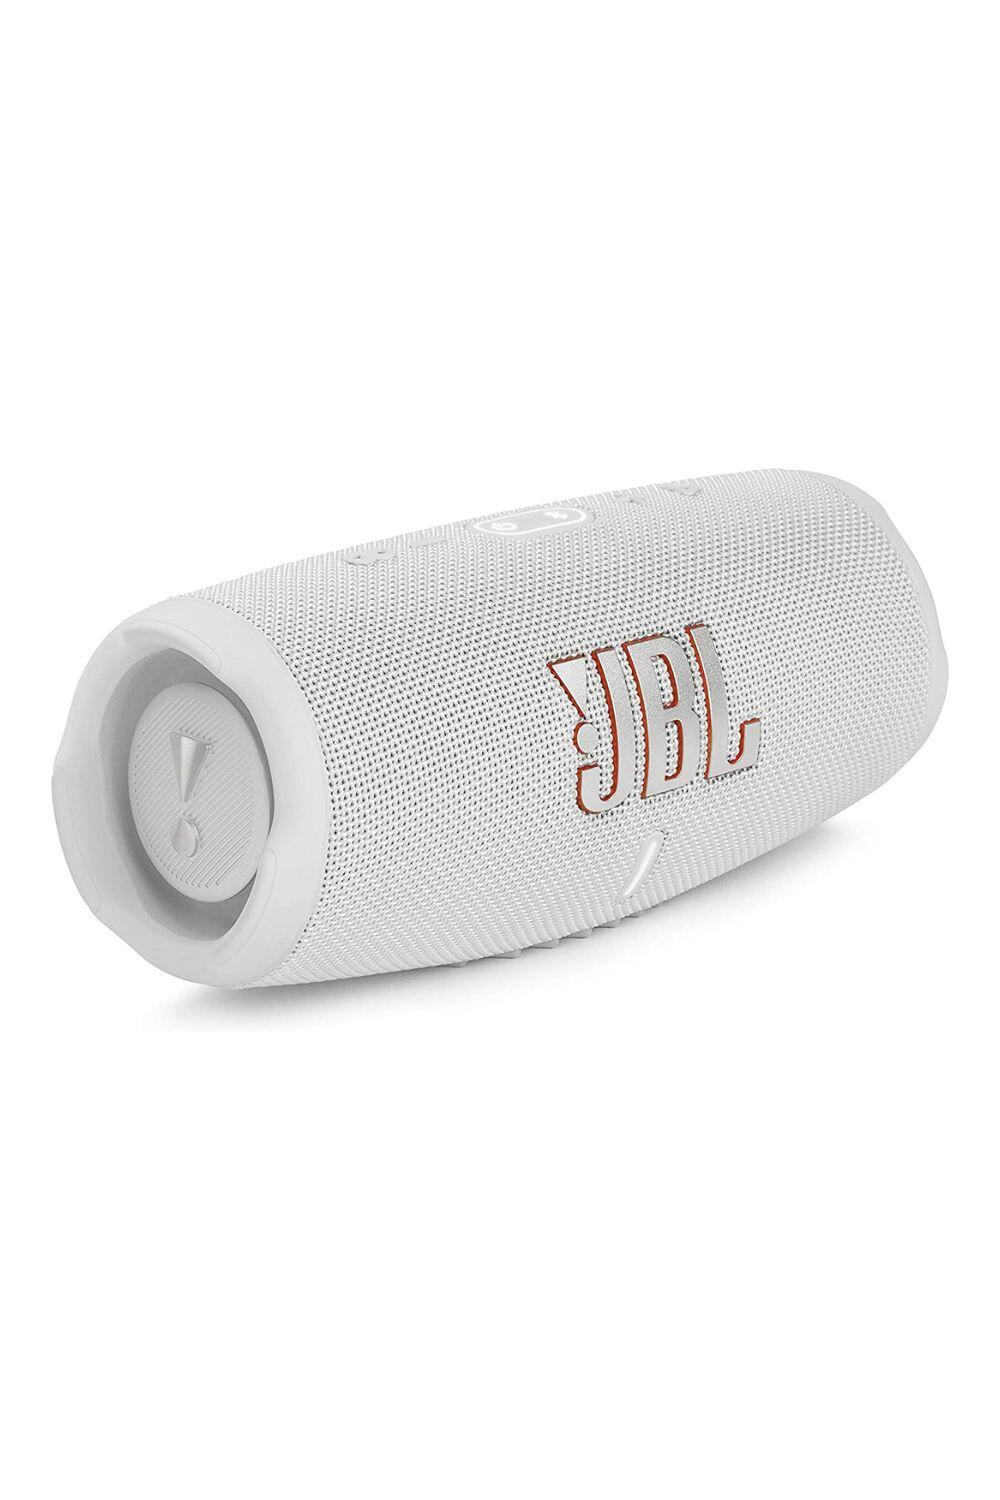 JBL Charge 5 Waterproof Portable Bluetooth Speaker 1/3